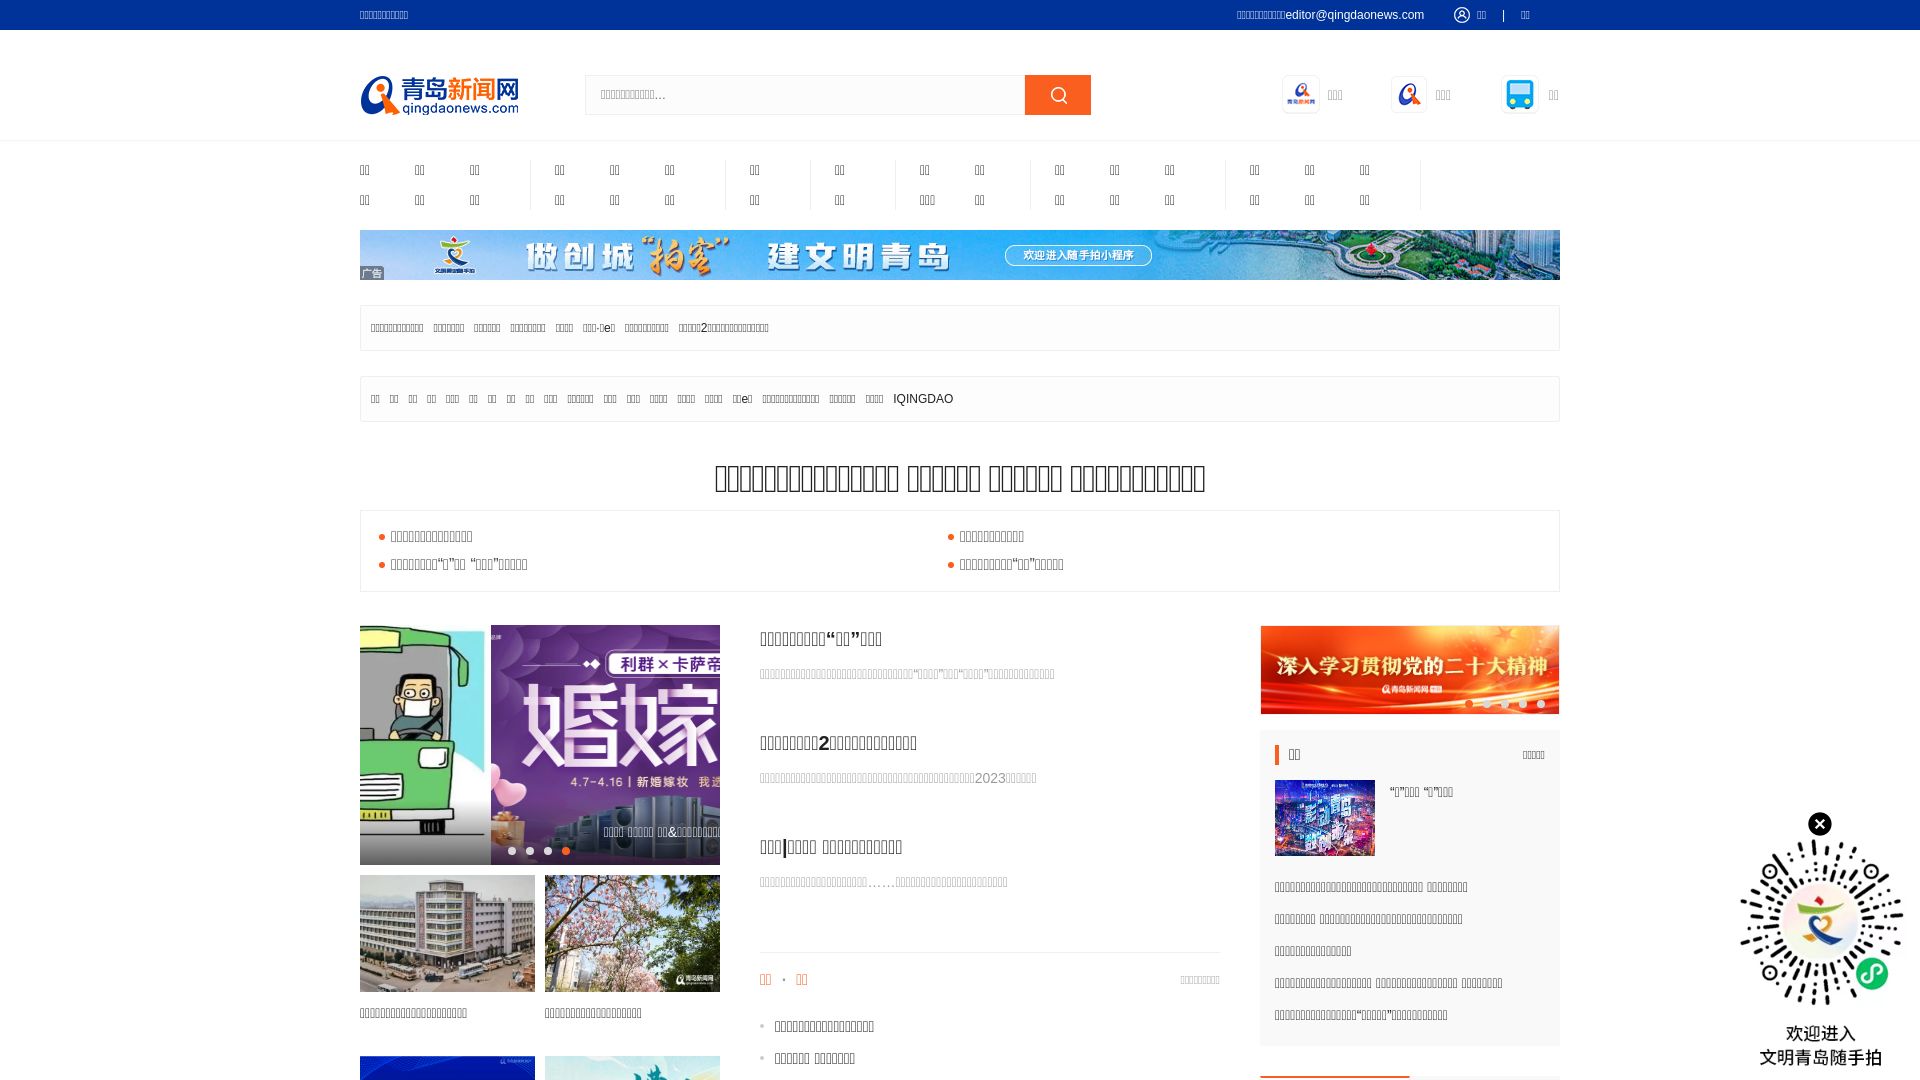 État du site web qingdaonews.com est   EN LIGNE